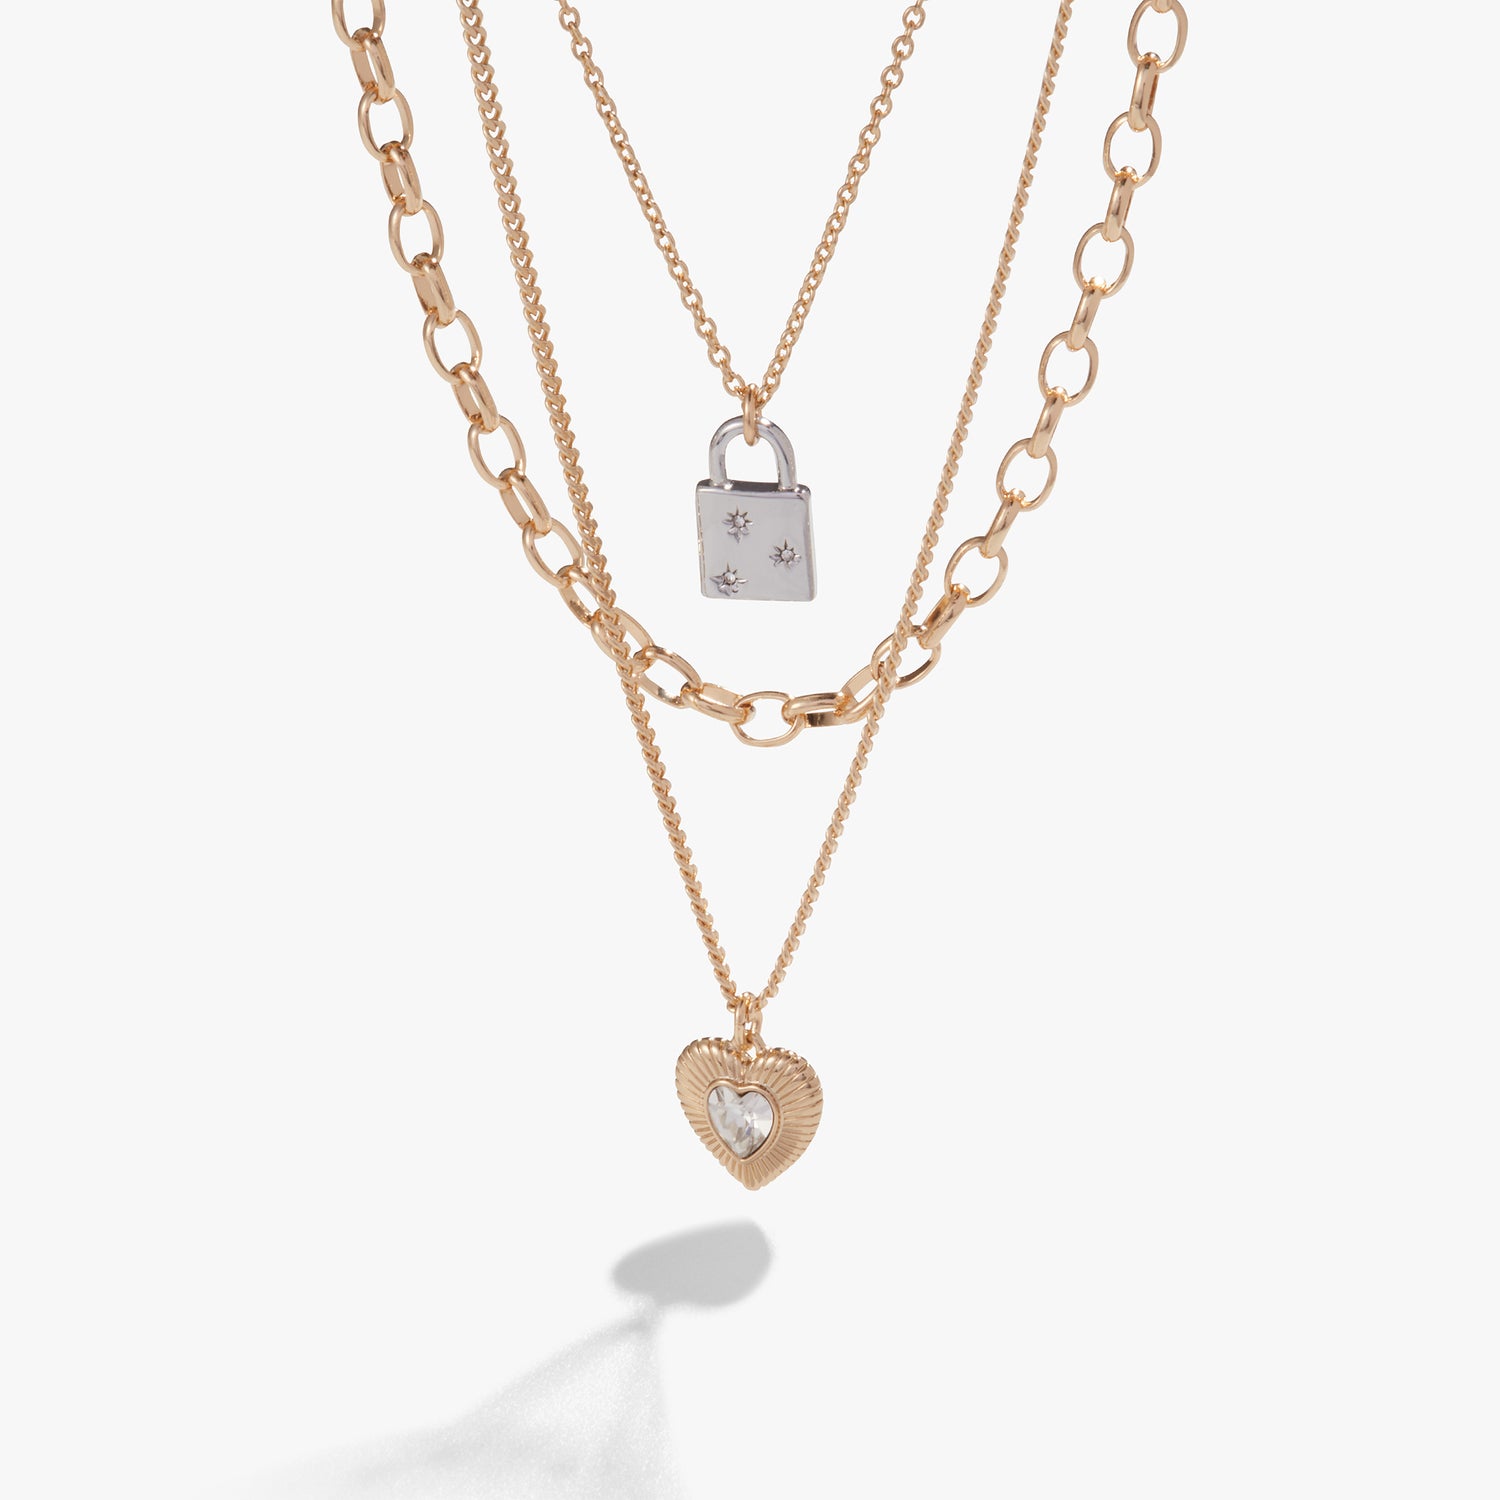 Multi-Chain Heart + Lock Necklace